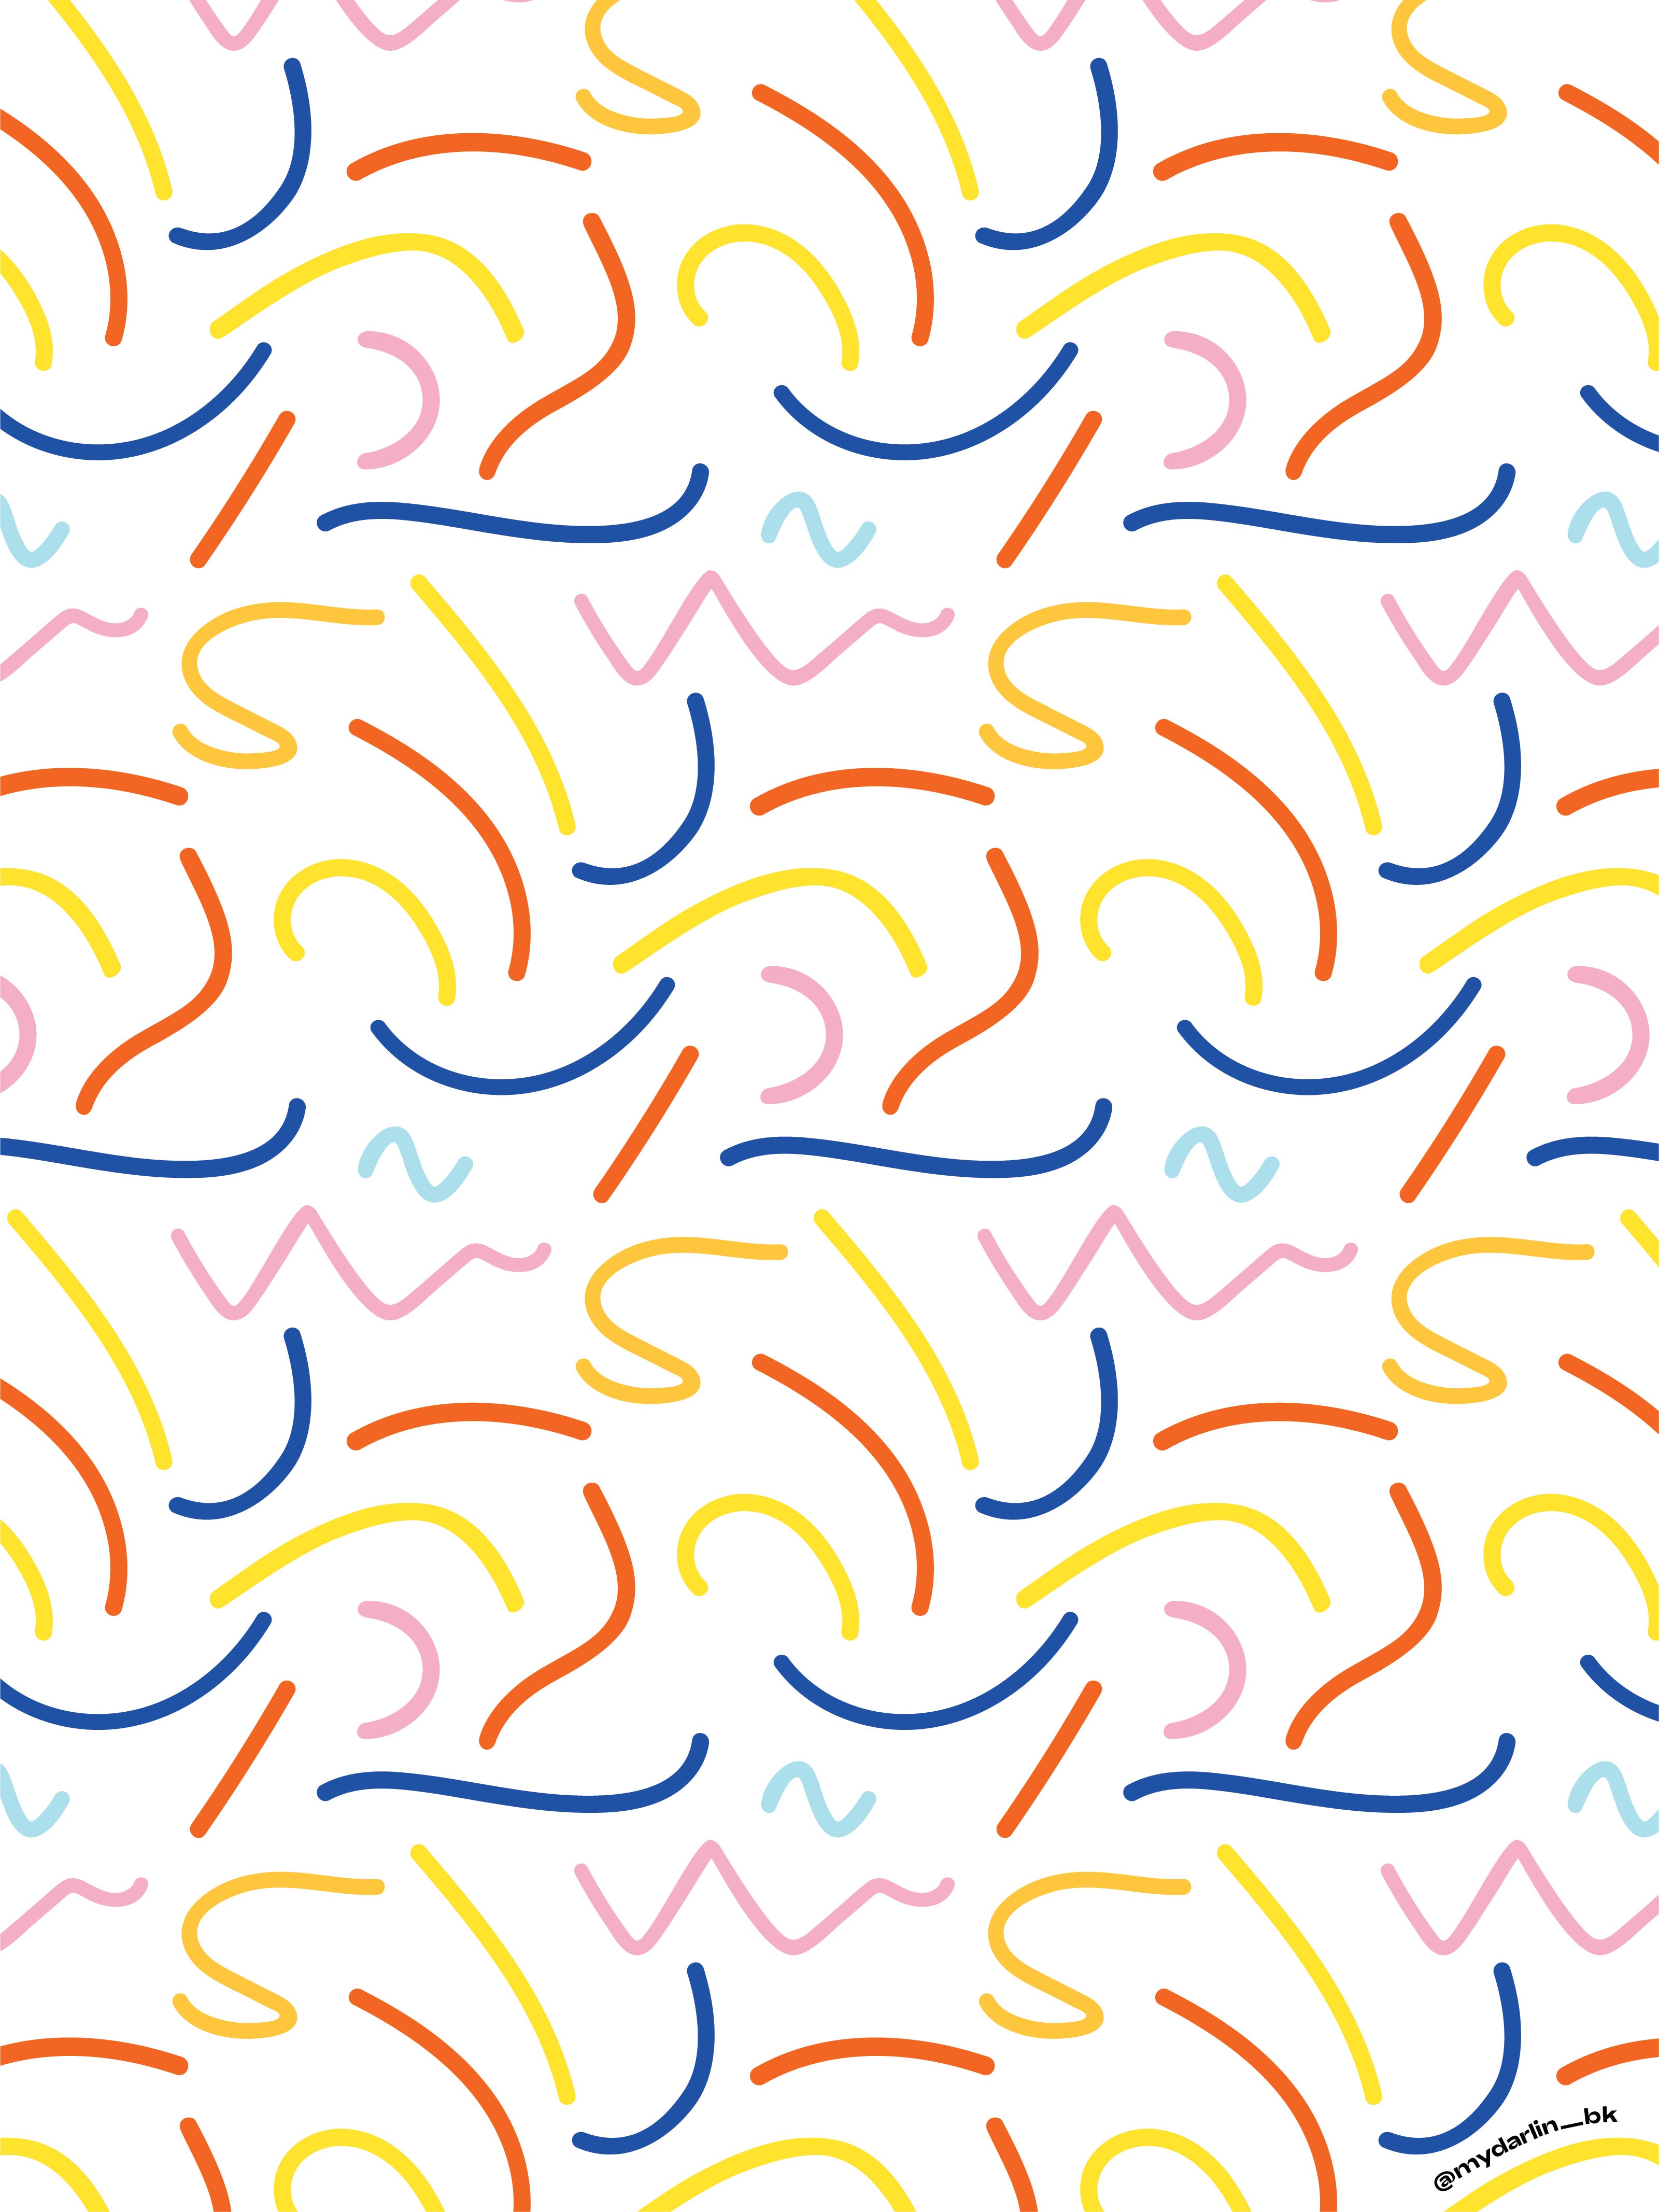 50 Pattern Wallpaper for iPhone  WallpaperSafari